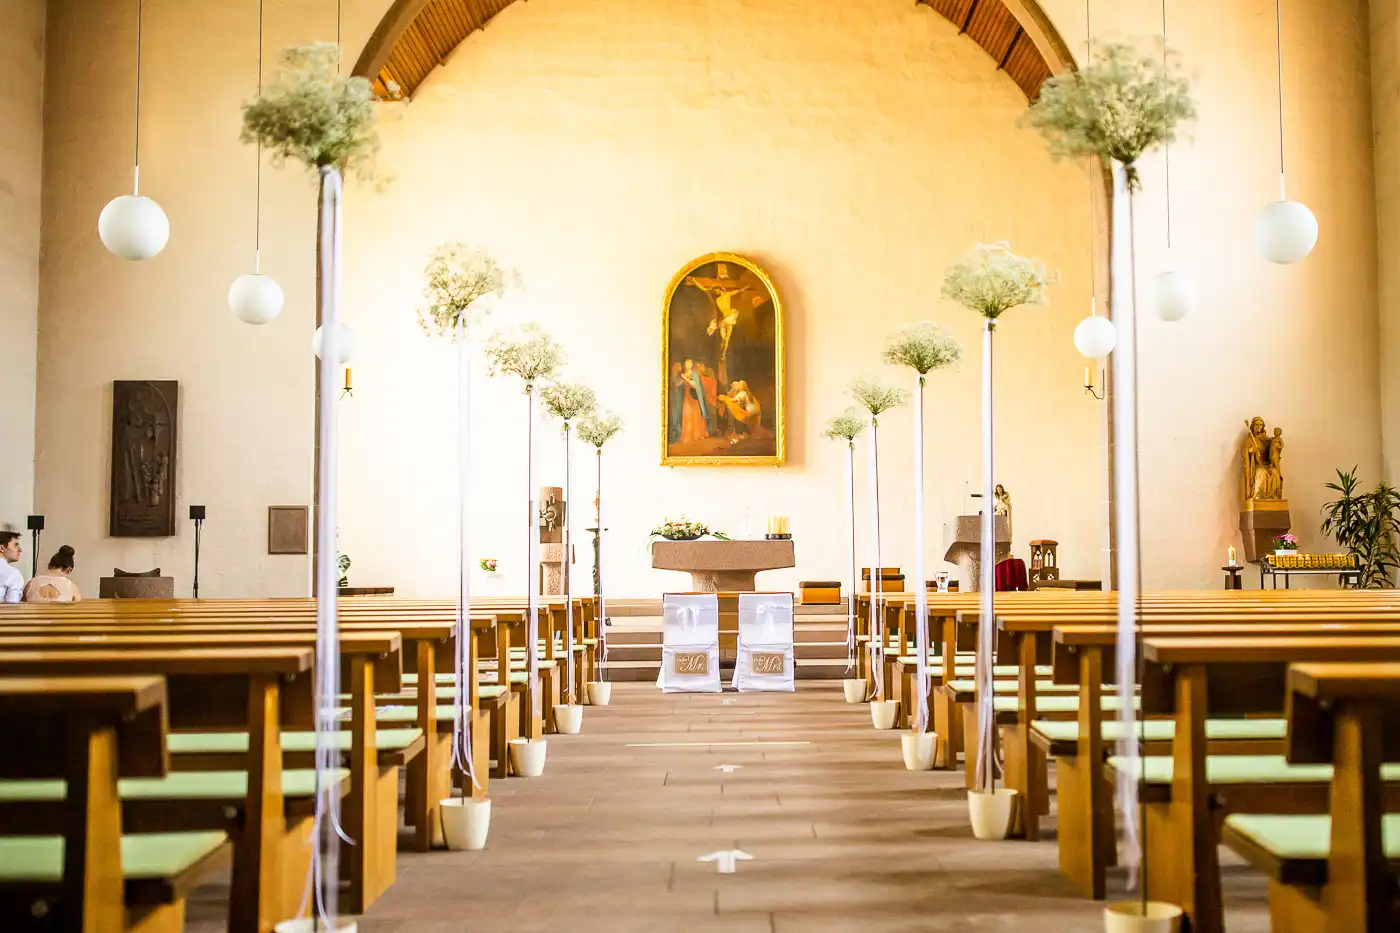 Leere Kirche St. Bernhard in Maulbronn mit Blumenschmuck für eine Hochzeit